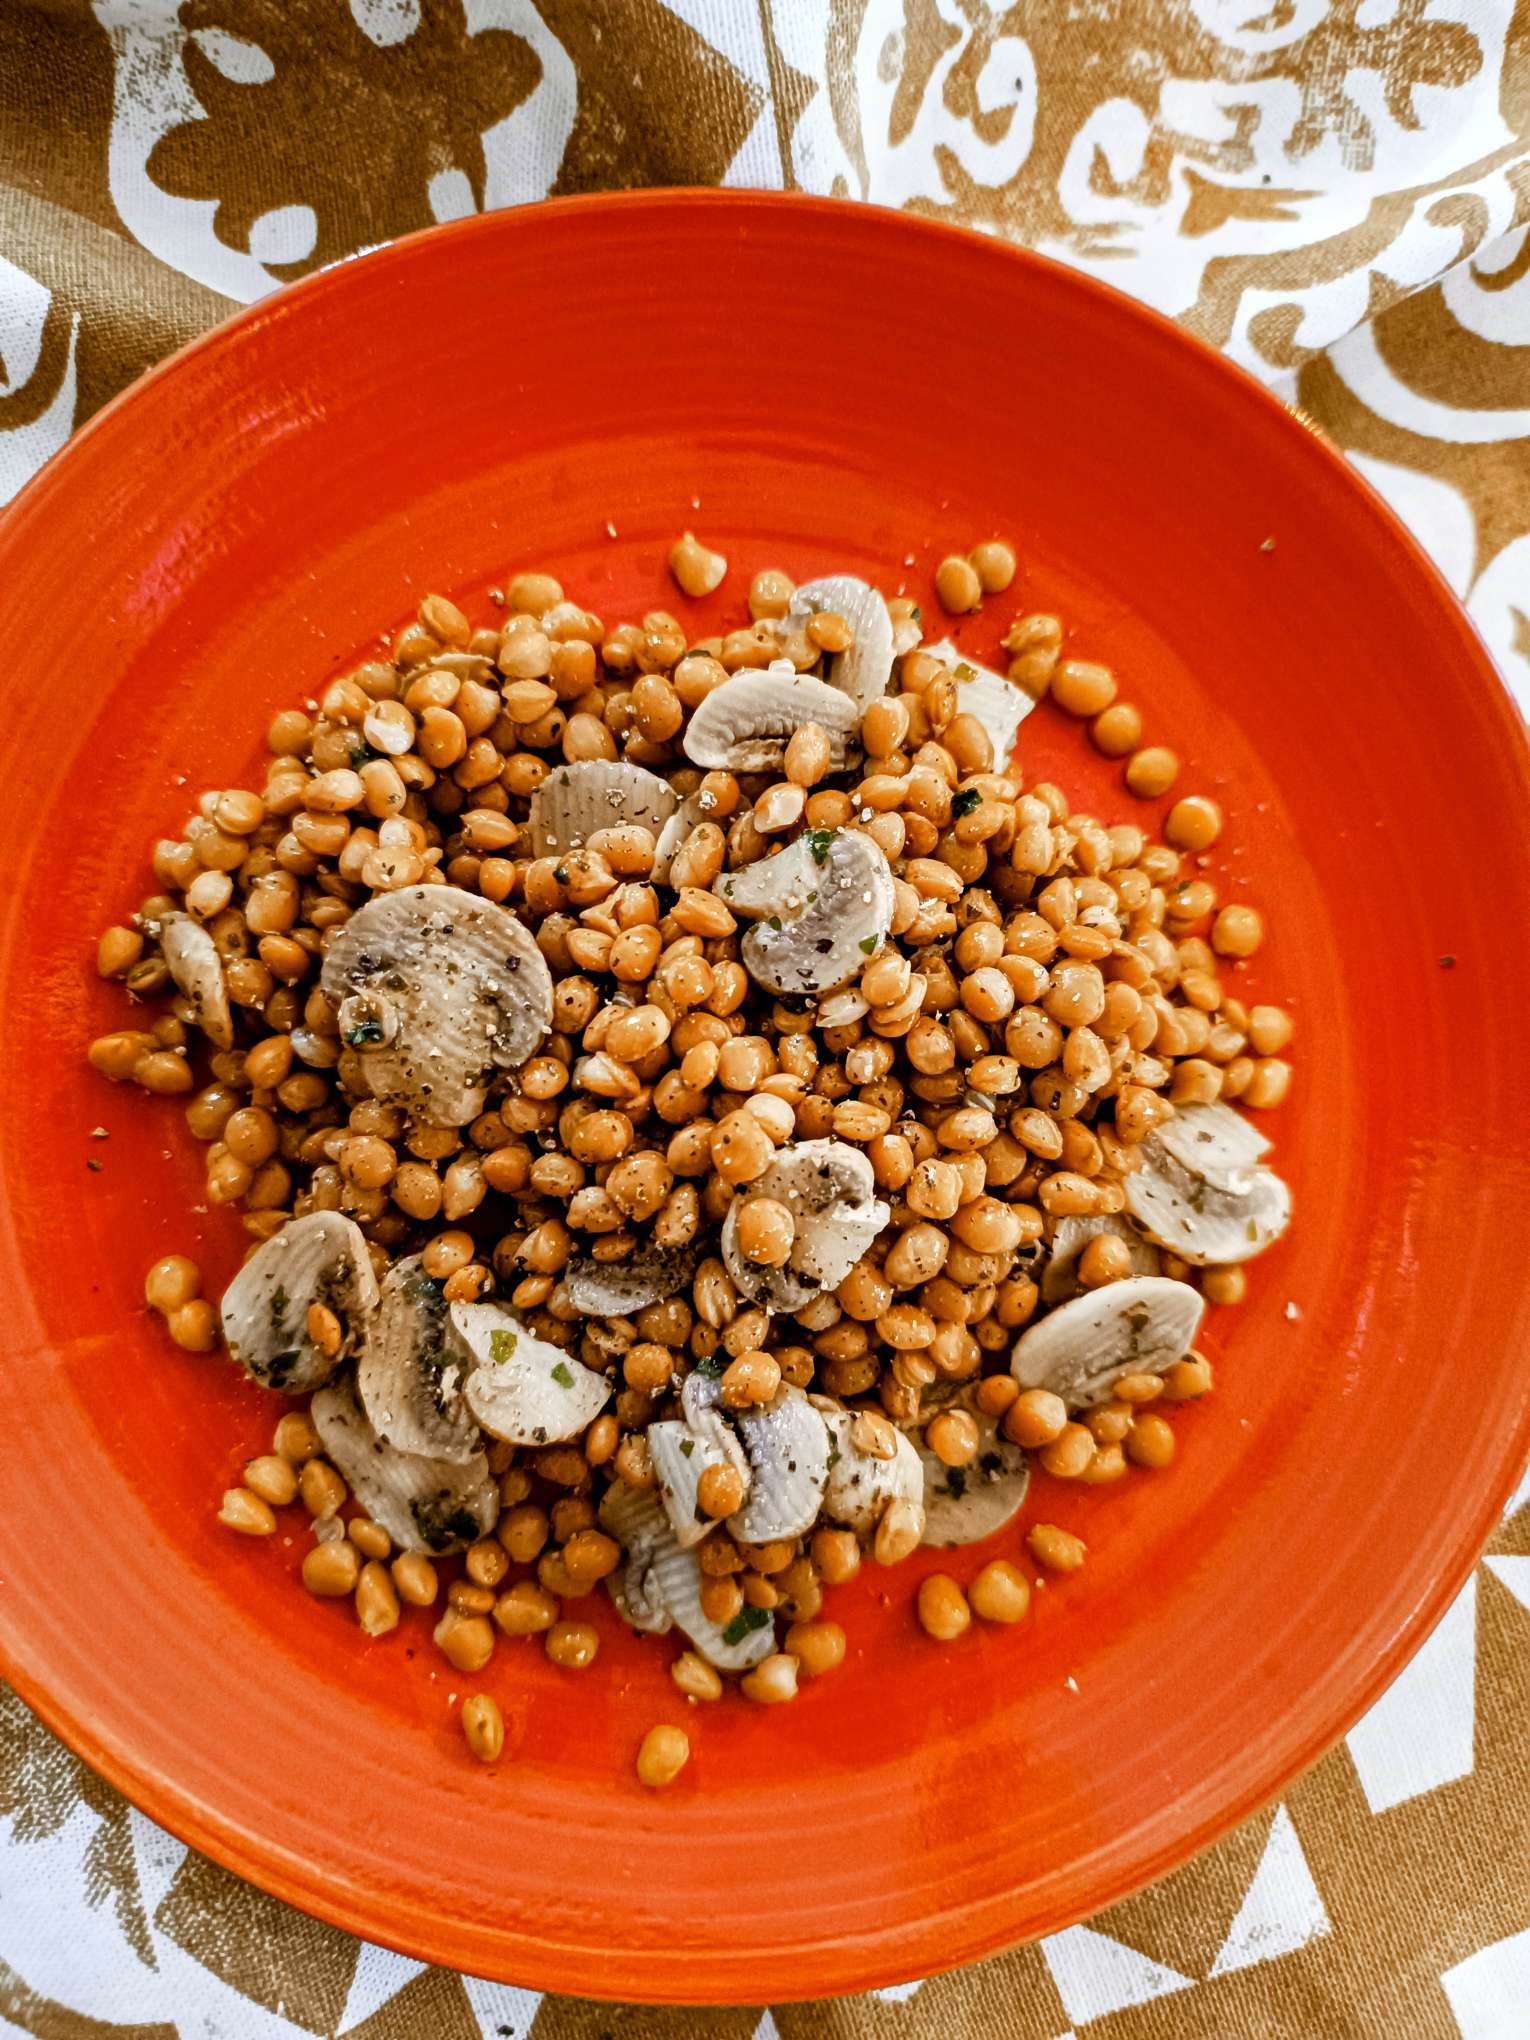 Funghi champignon e lenticchie in padella